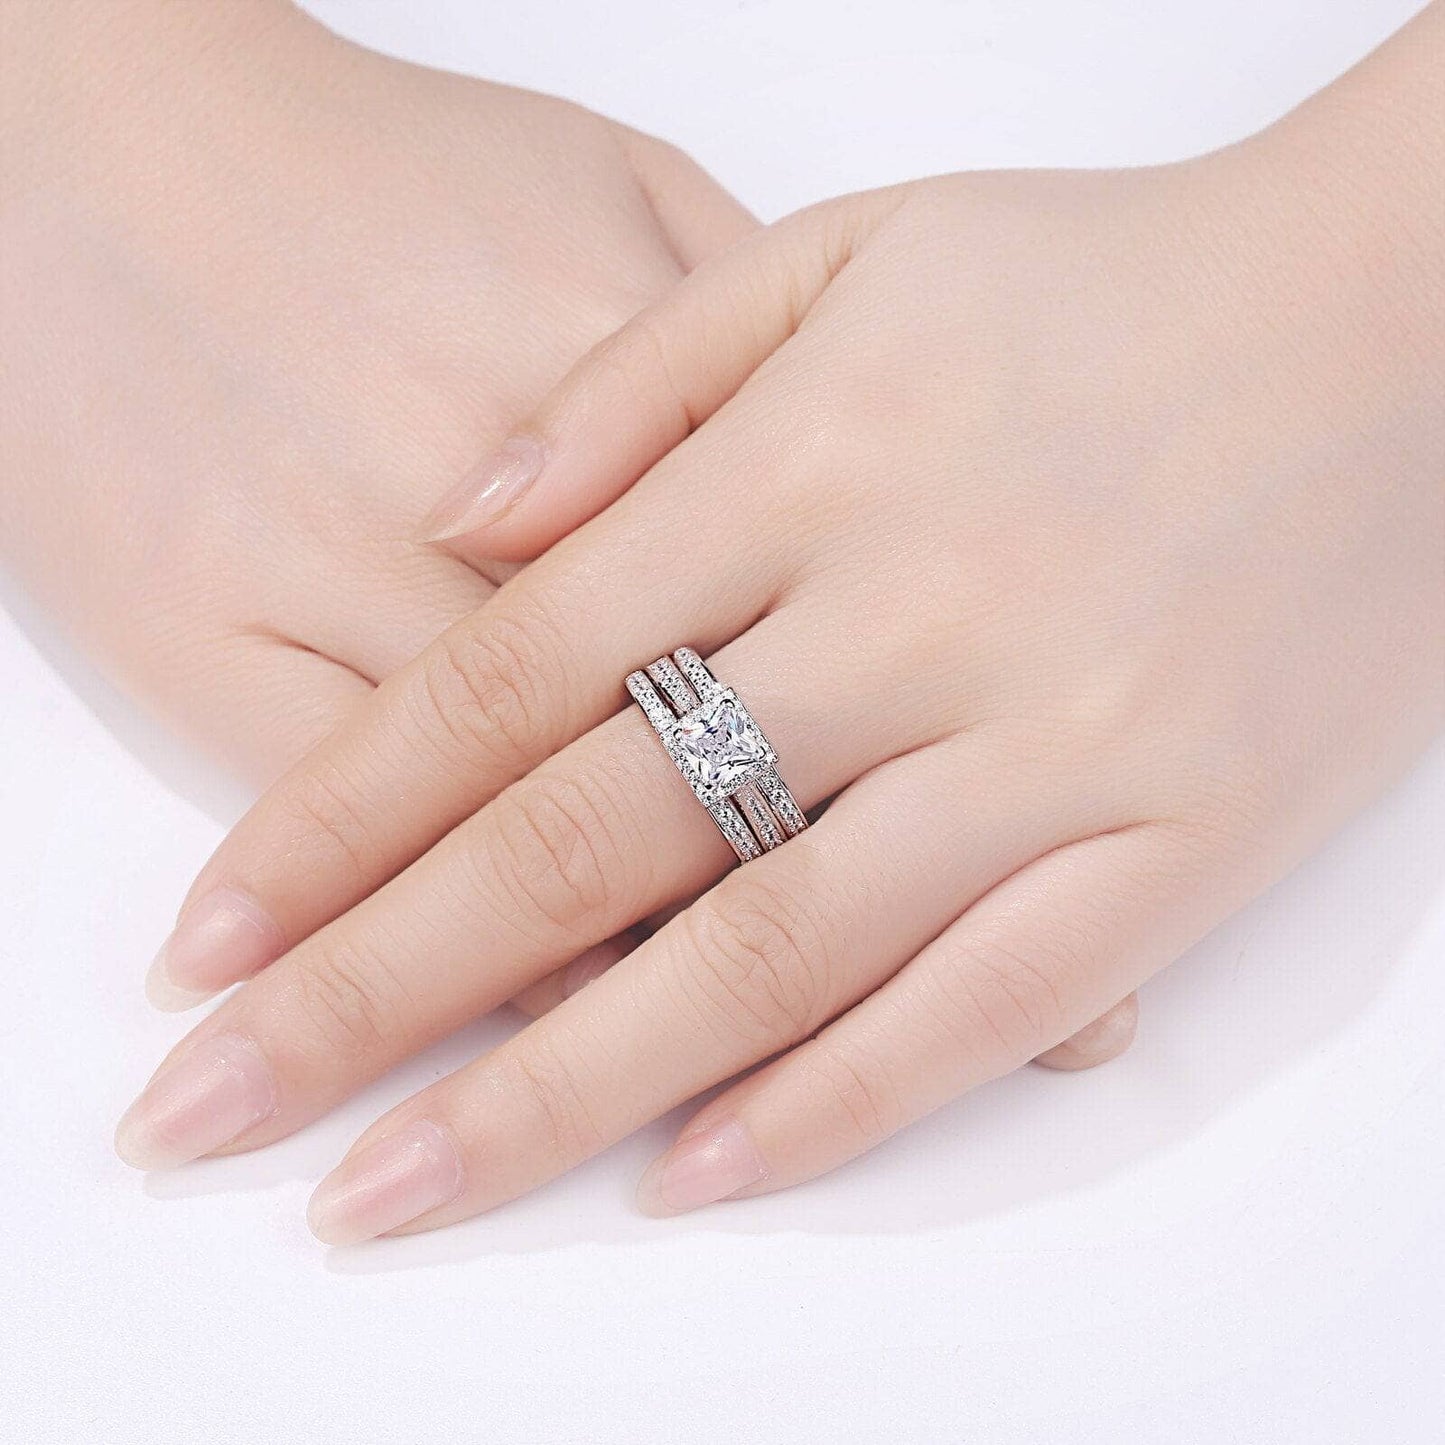 3pcs 2.8ct Princess Cut White Cubic Zircon Engagement Ring